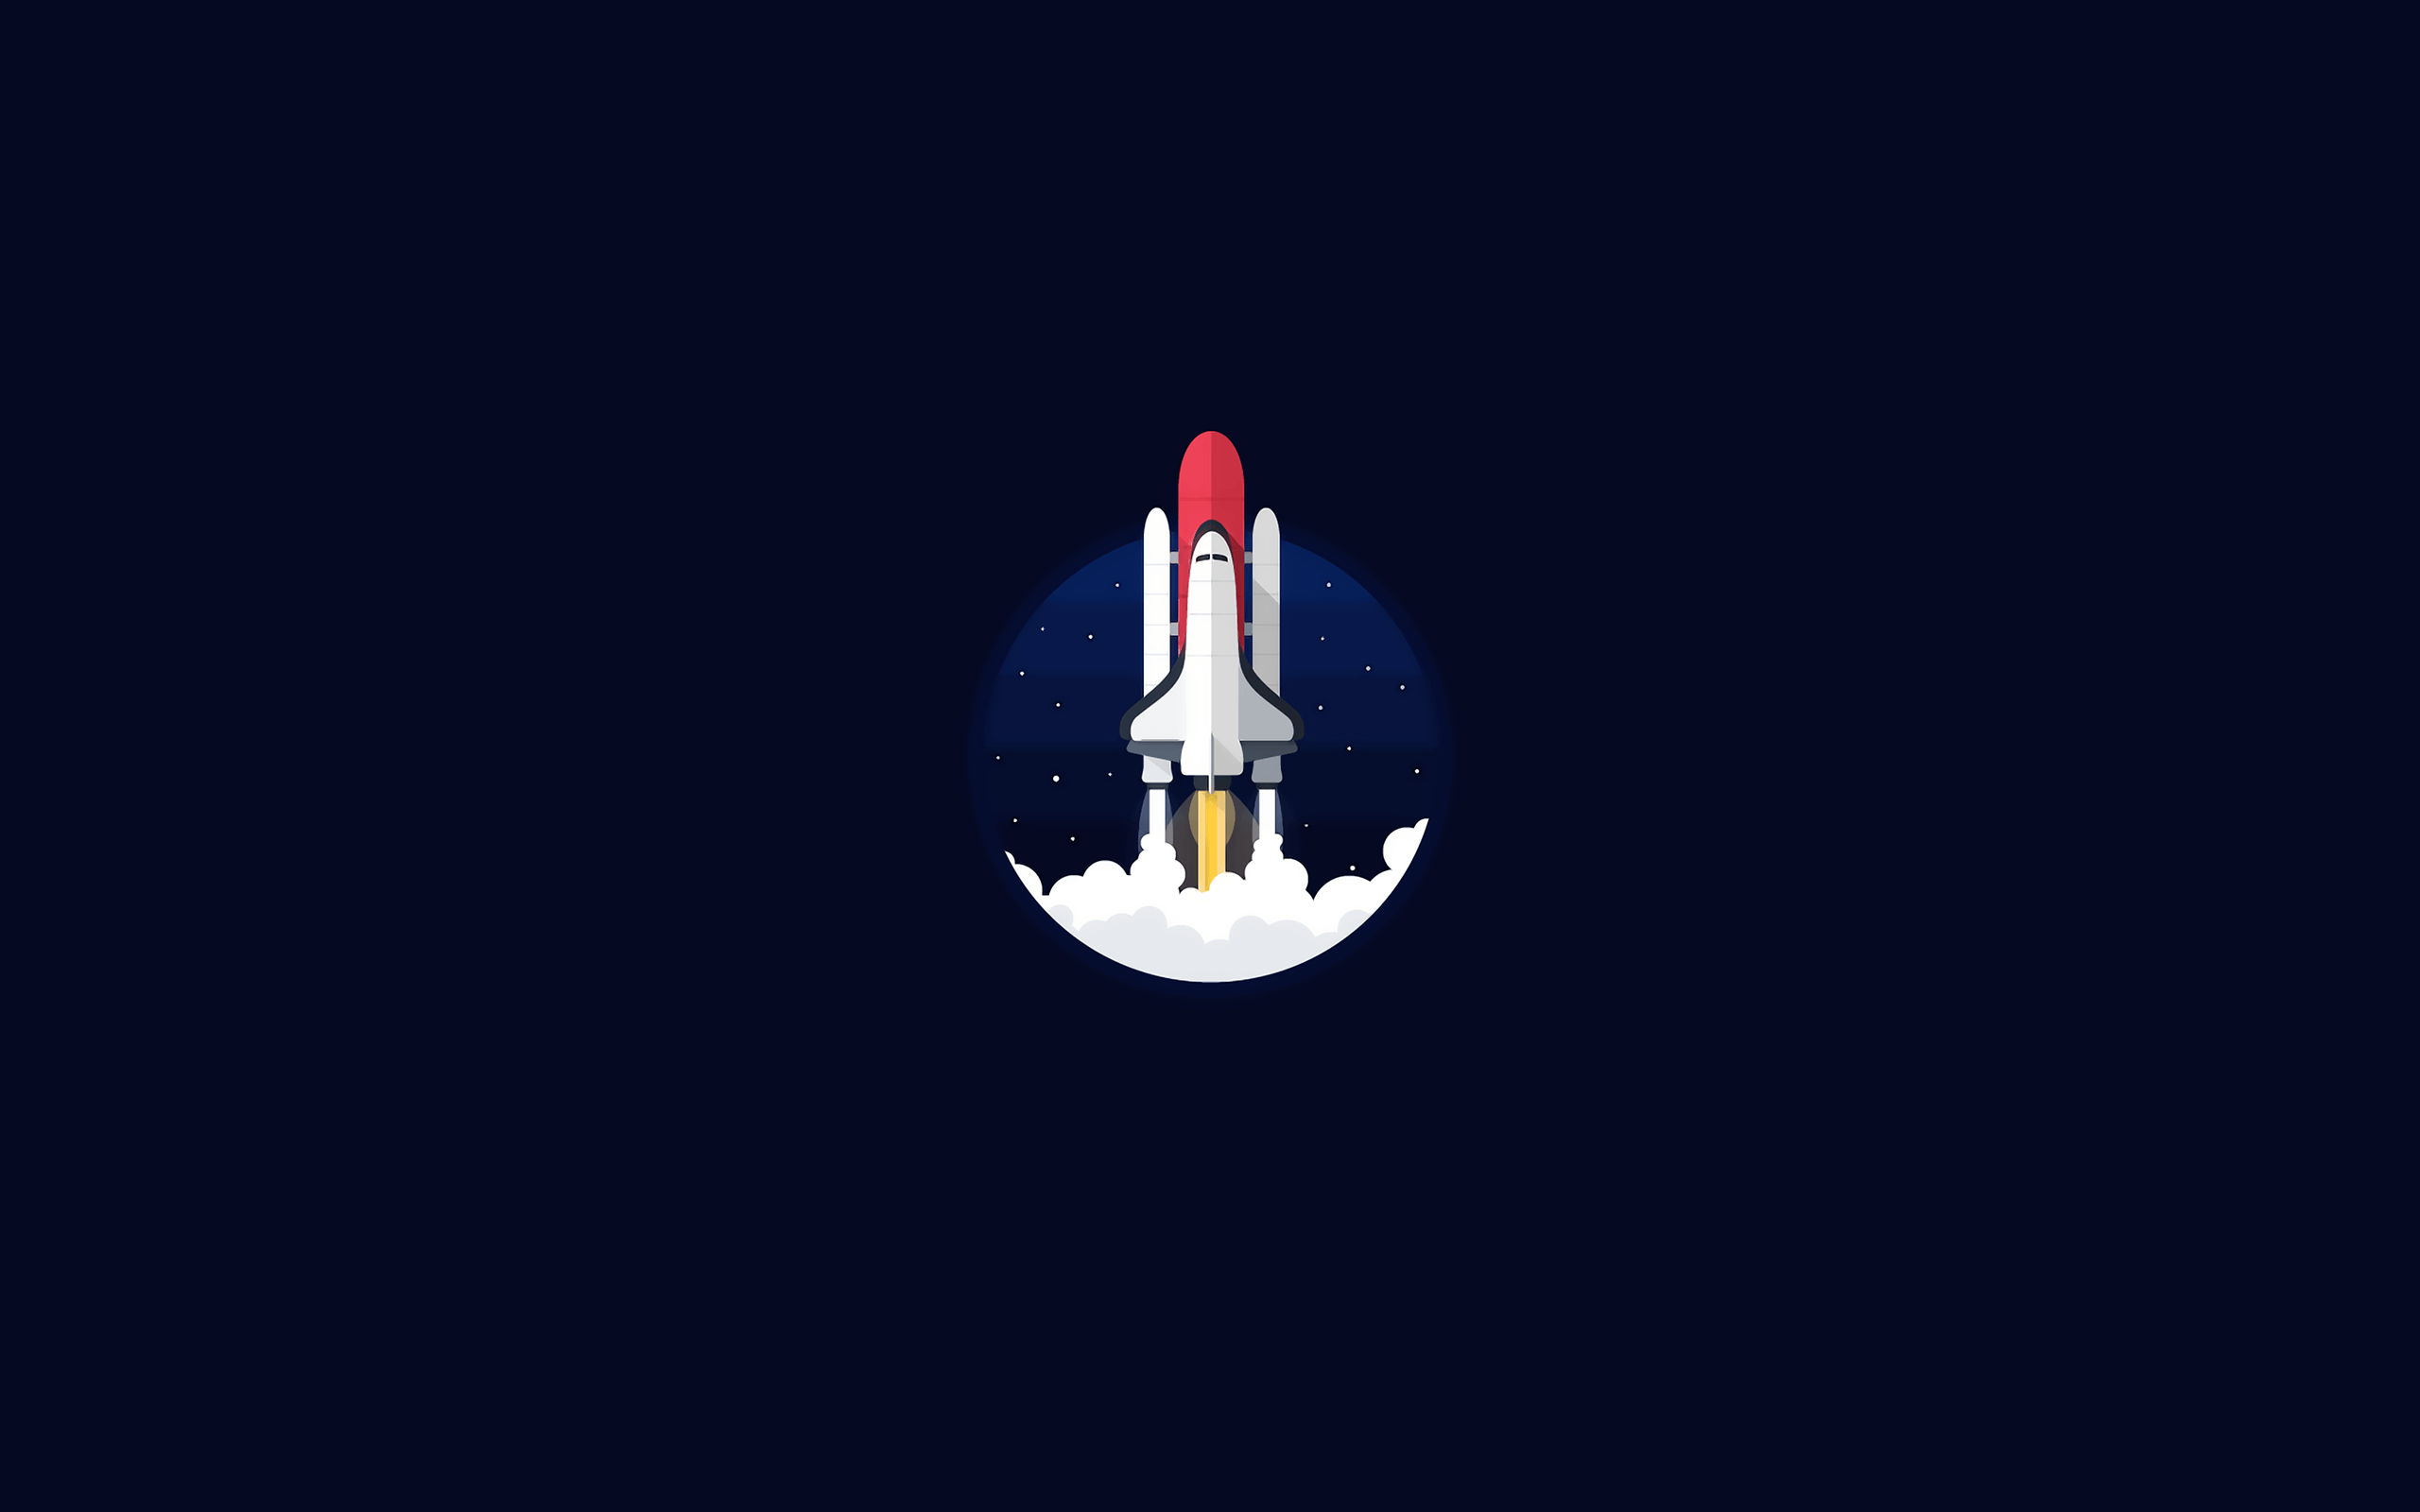 Spacecraft Logo - Wallpaper : illustration, NASA, minimalism, vehicle, logo, rocket